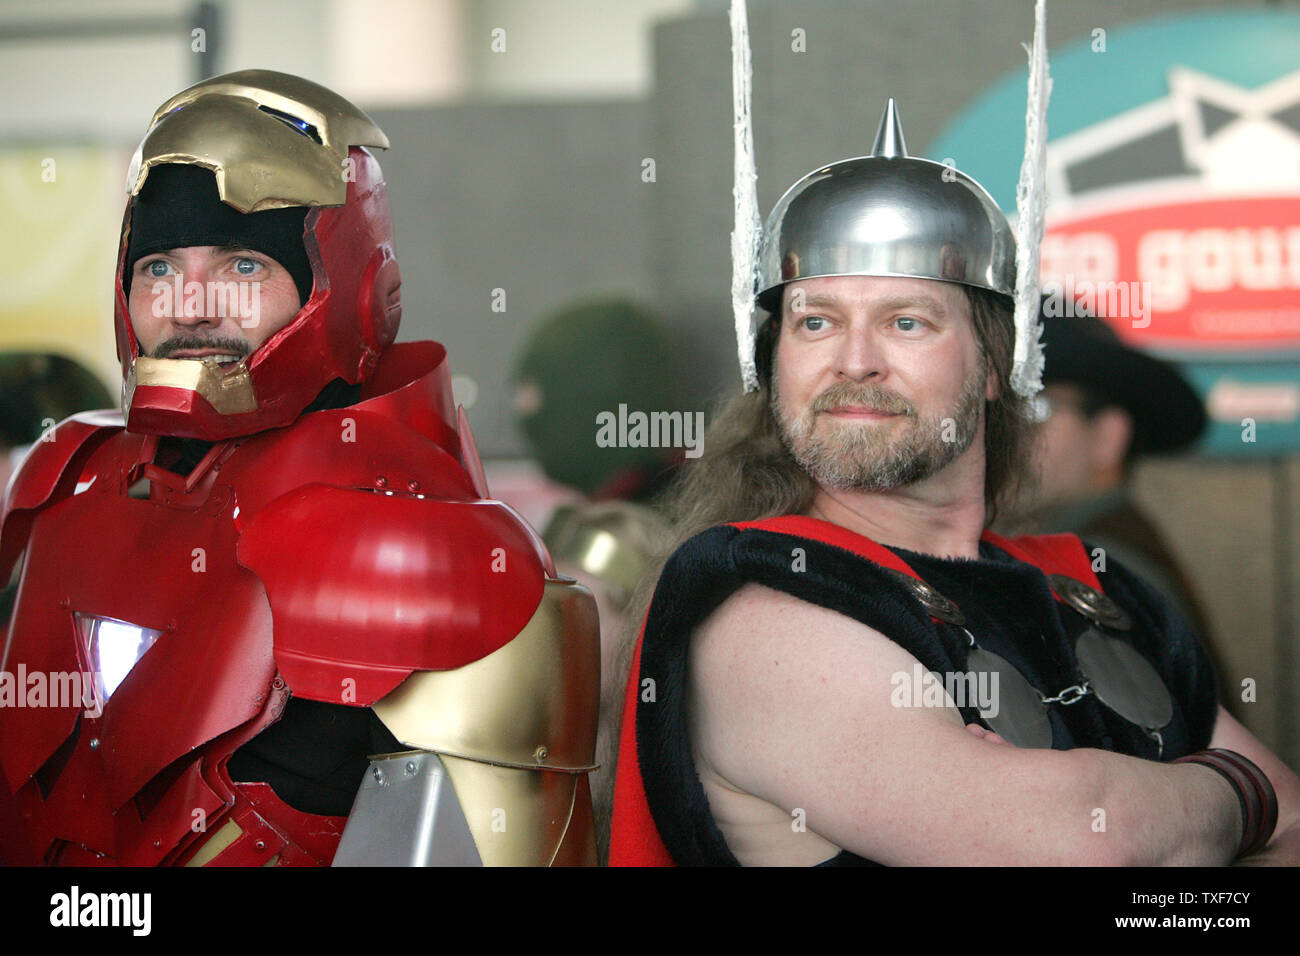 Costume de Thor Cosplay, Costume de bande dessinée, armure de Thor